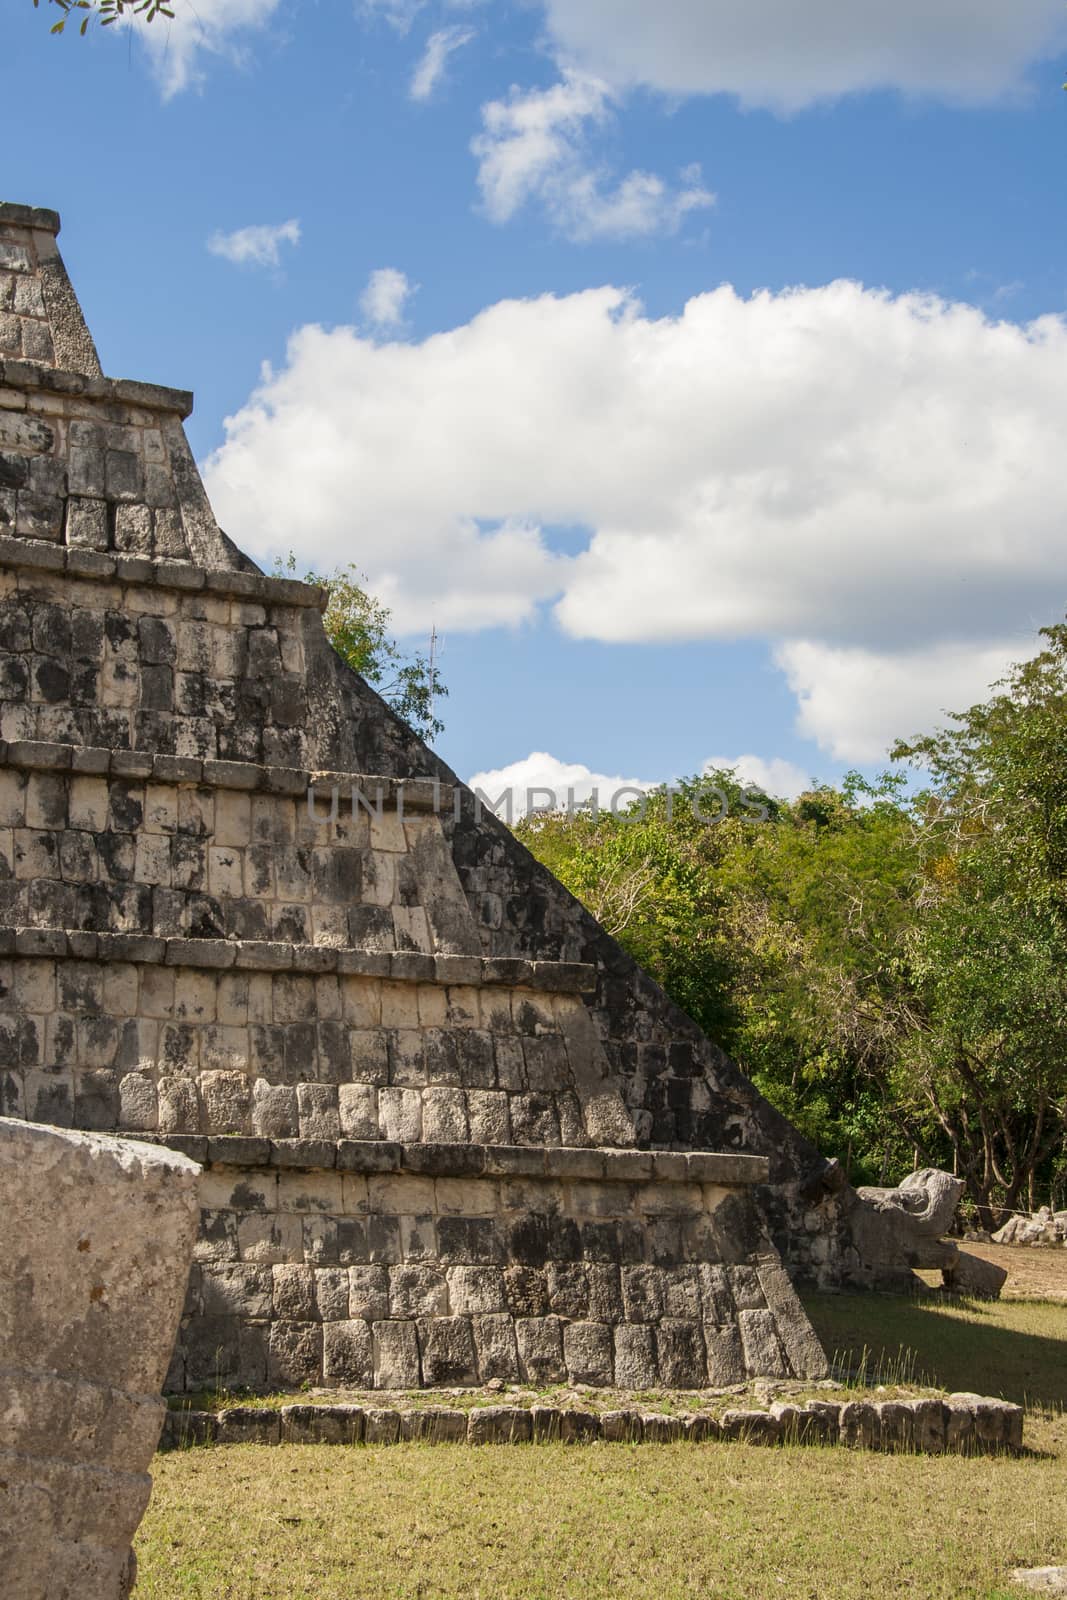 Ancient Mayan pyramid, Kukulcan Temple at Chichen Itza, Yucatan, Mexico by tanaonte